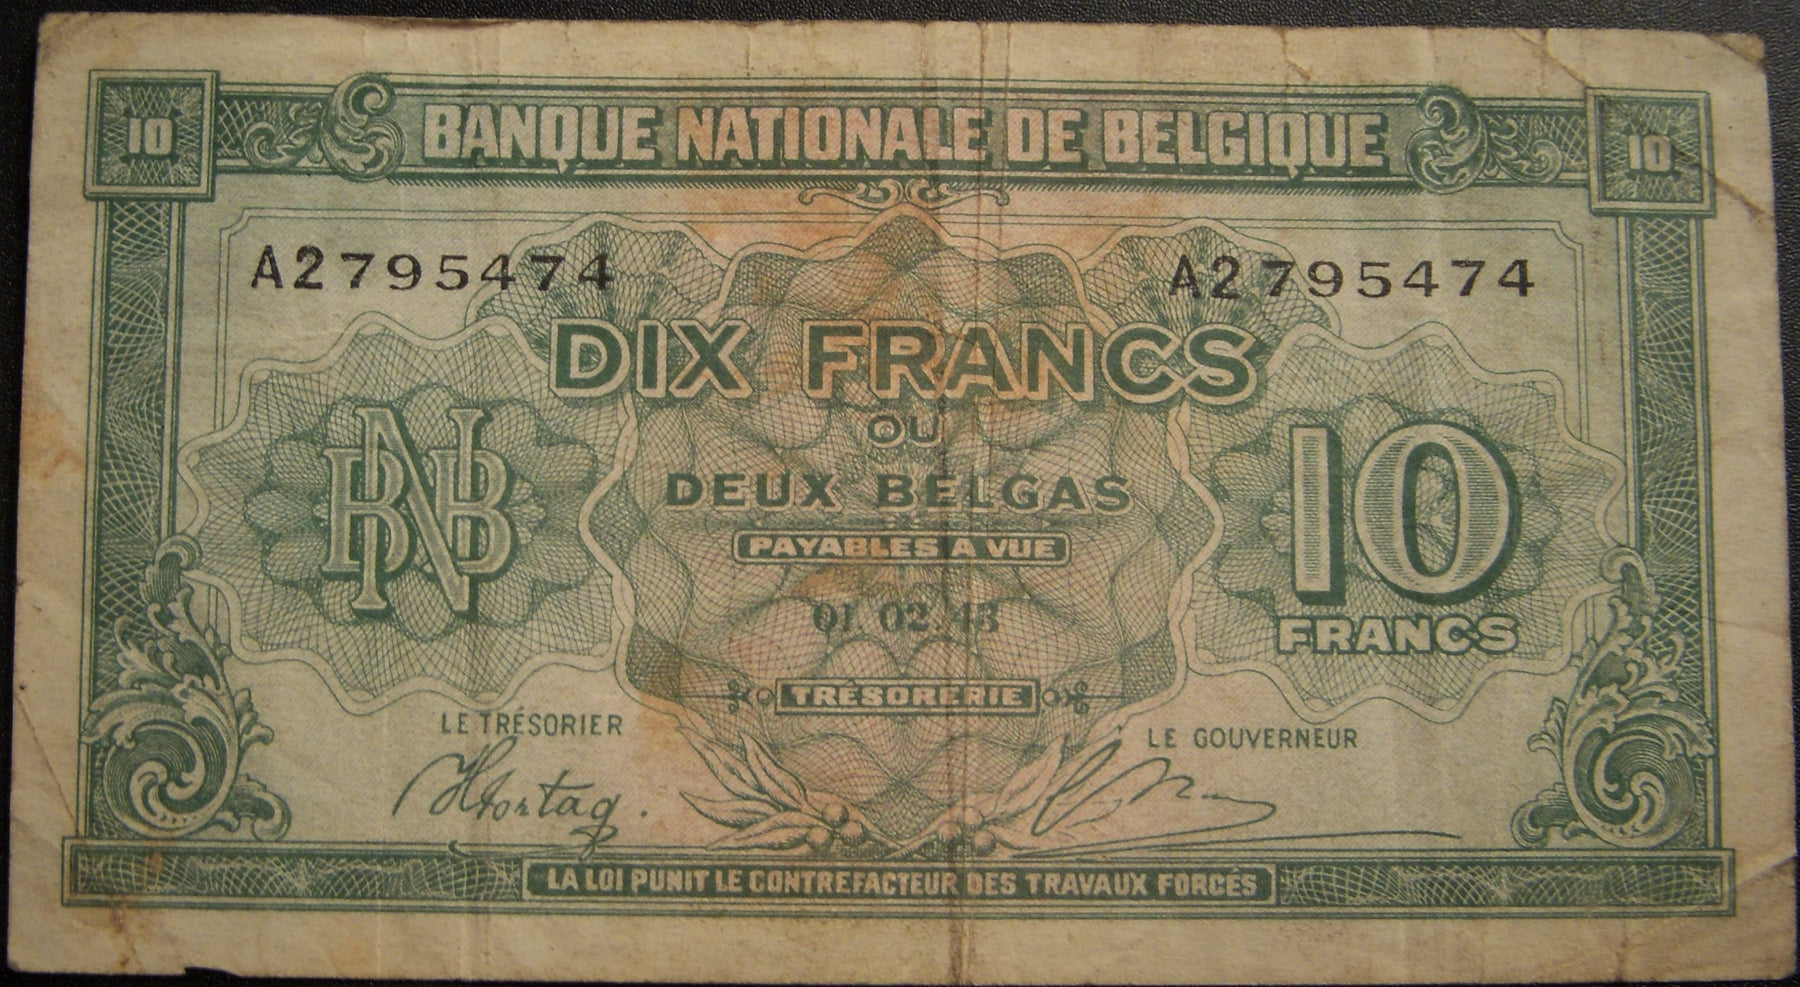 1943 10 Francs Note - Belgium